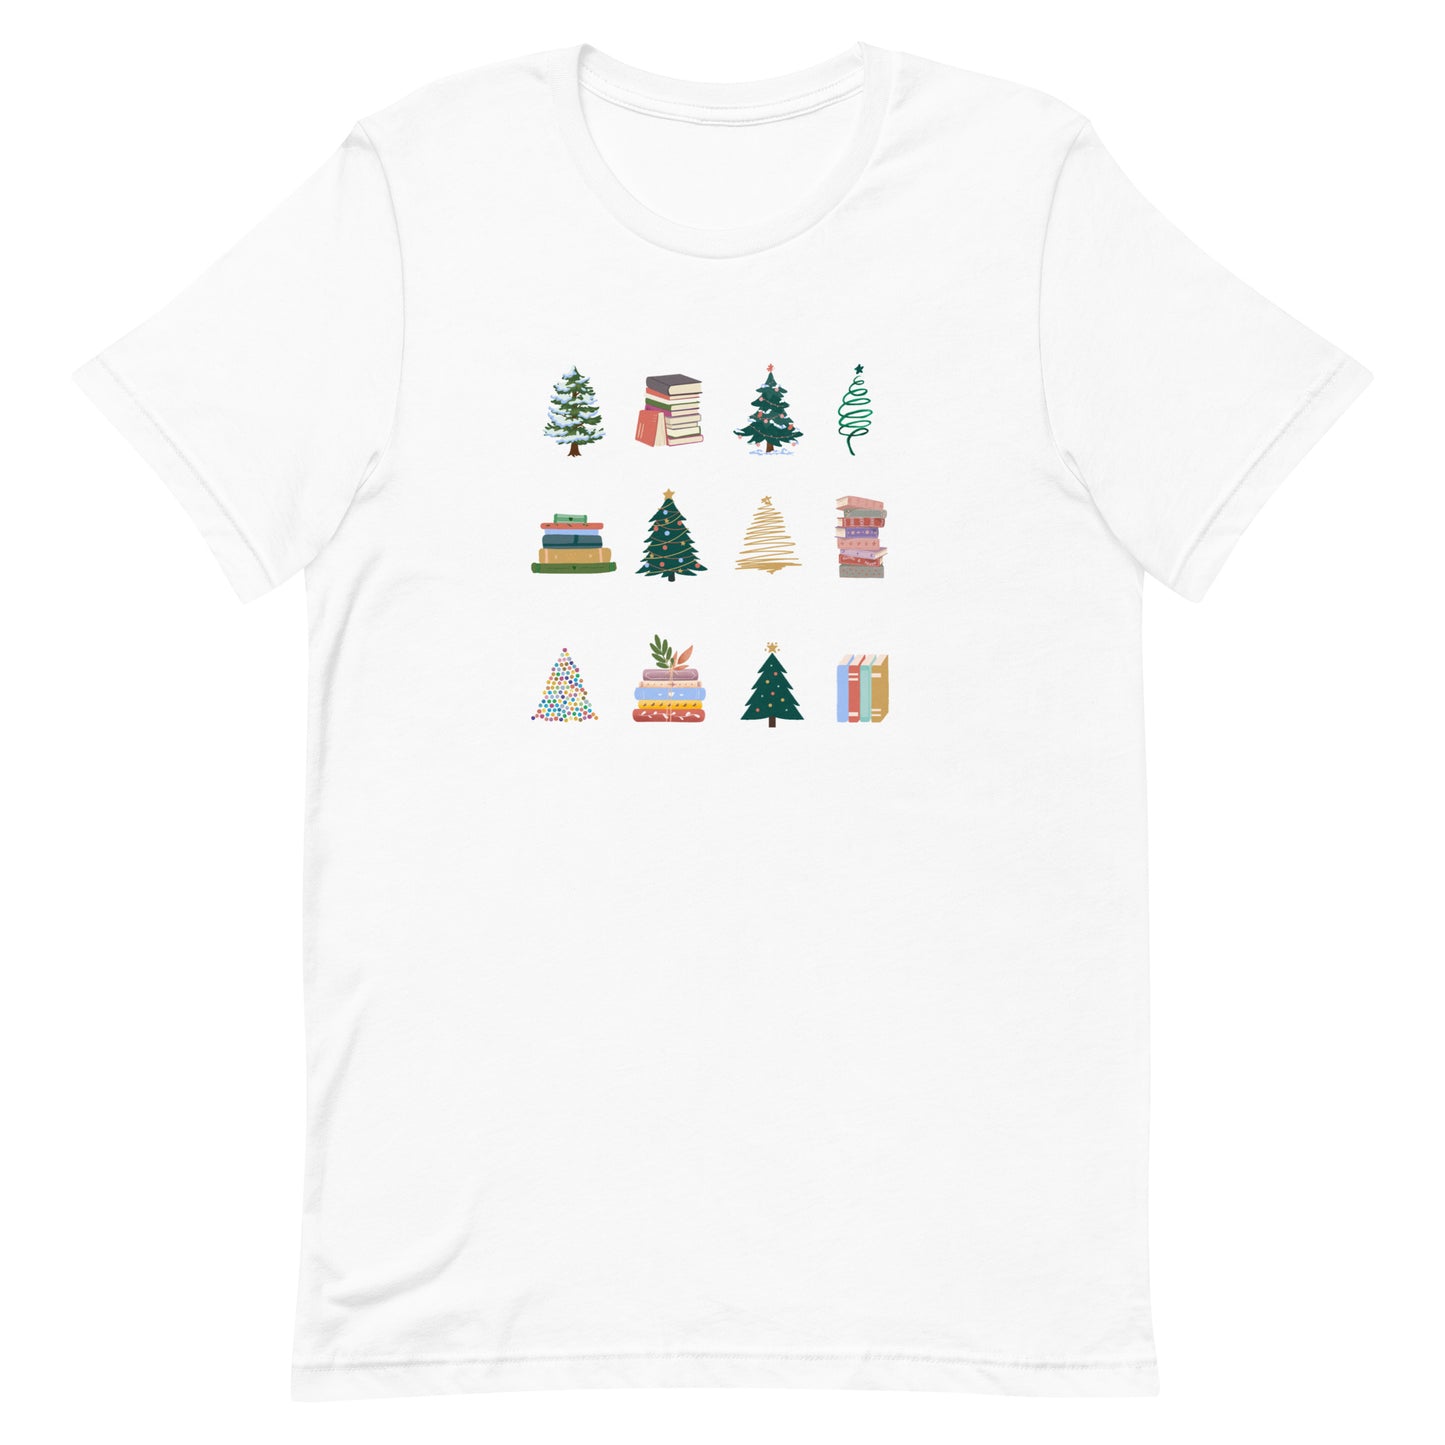 trees & books t-shirt